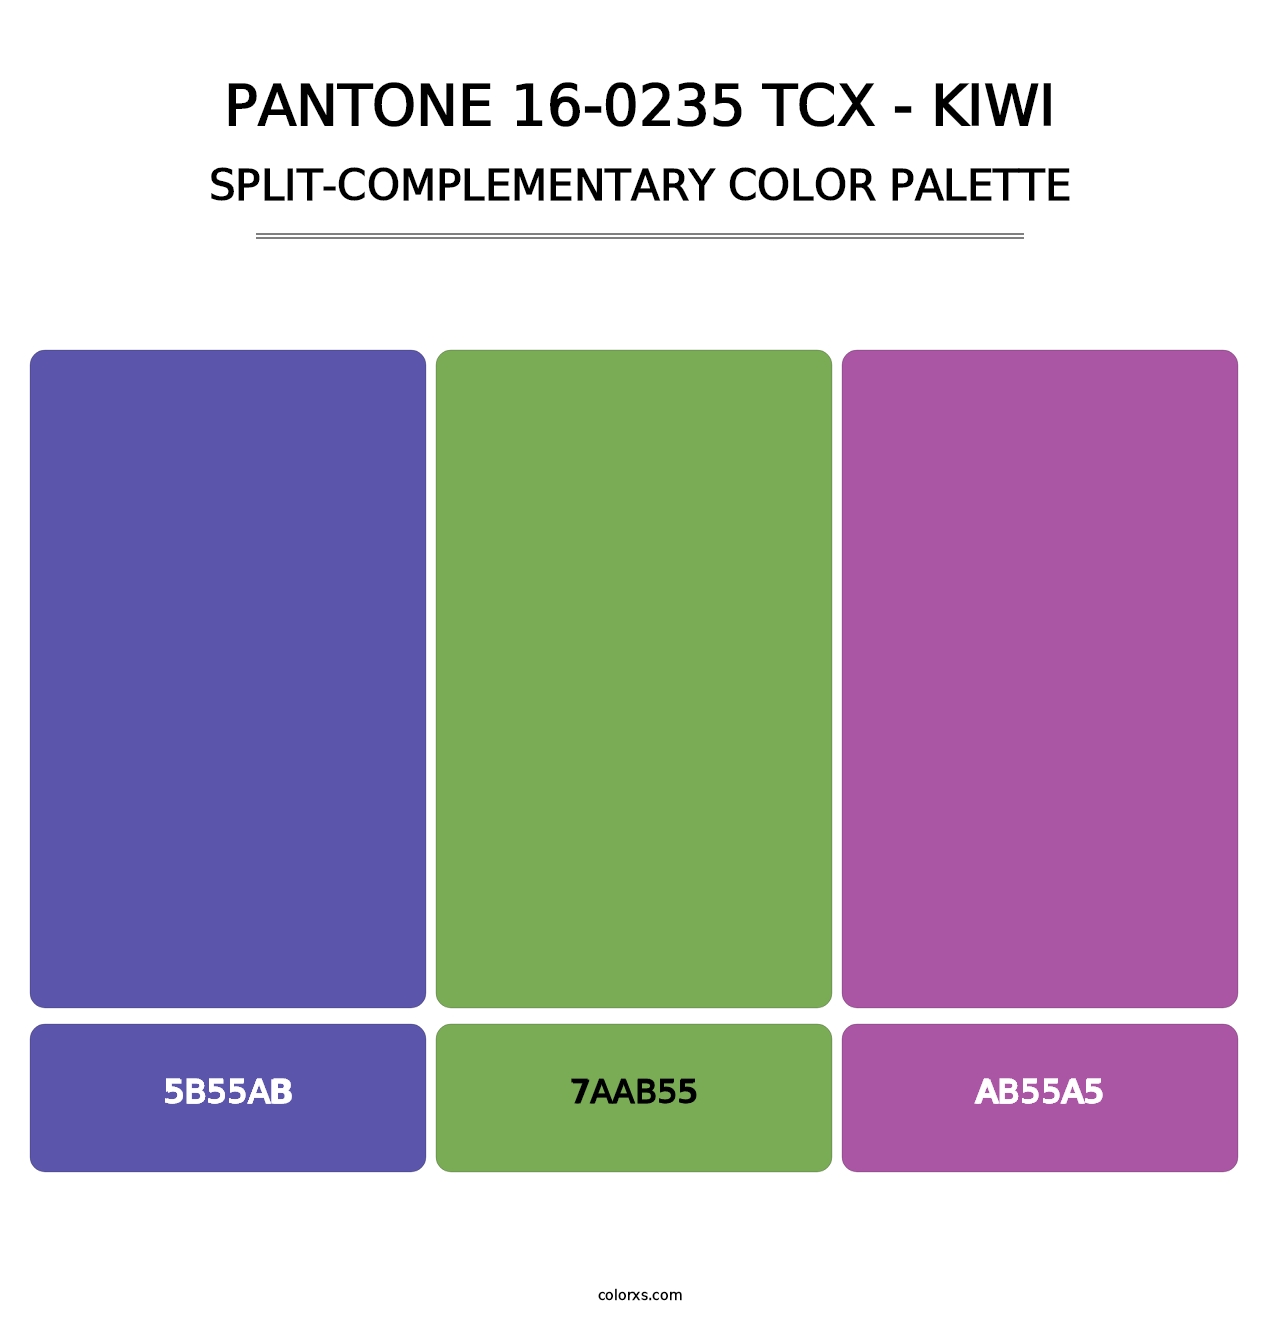 PANTONE 16-0235 TCX - Kiwi - Split-Complementary Color Palette